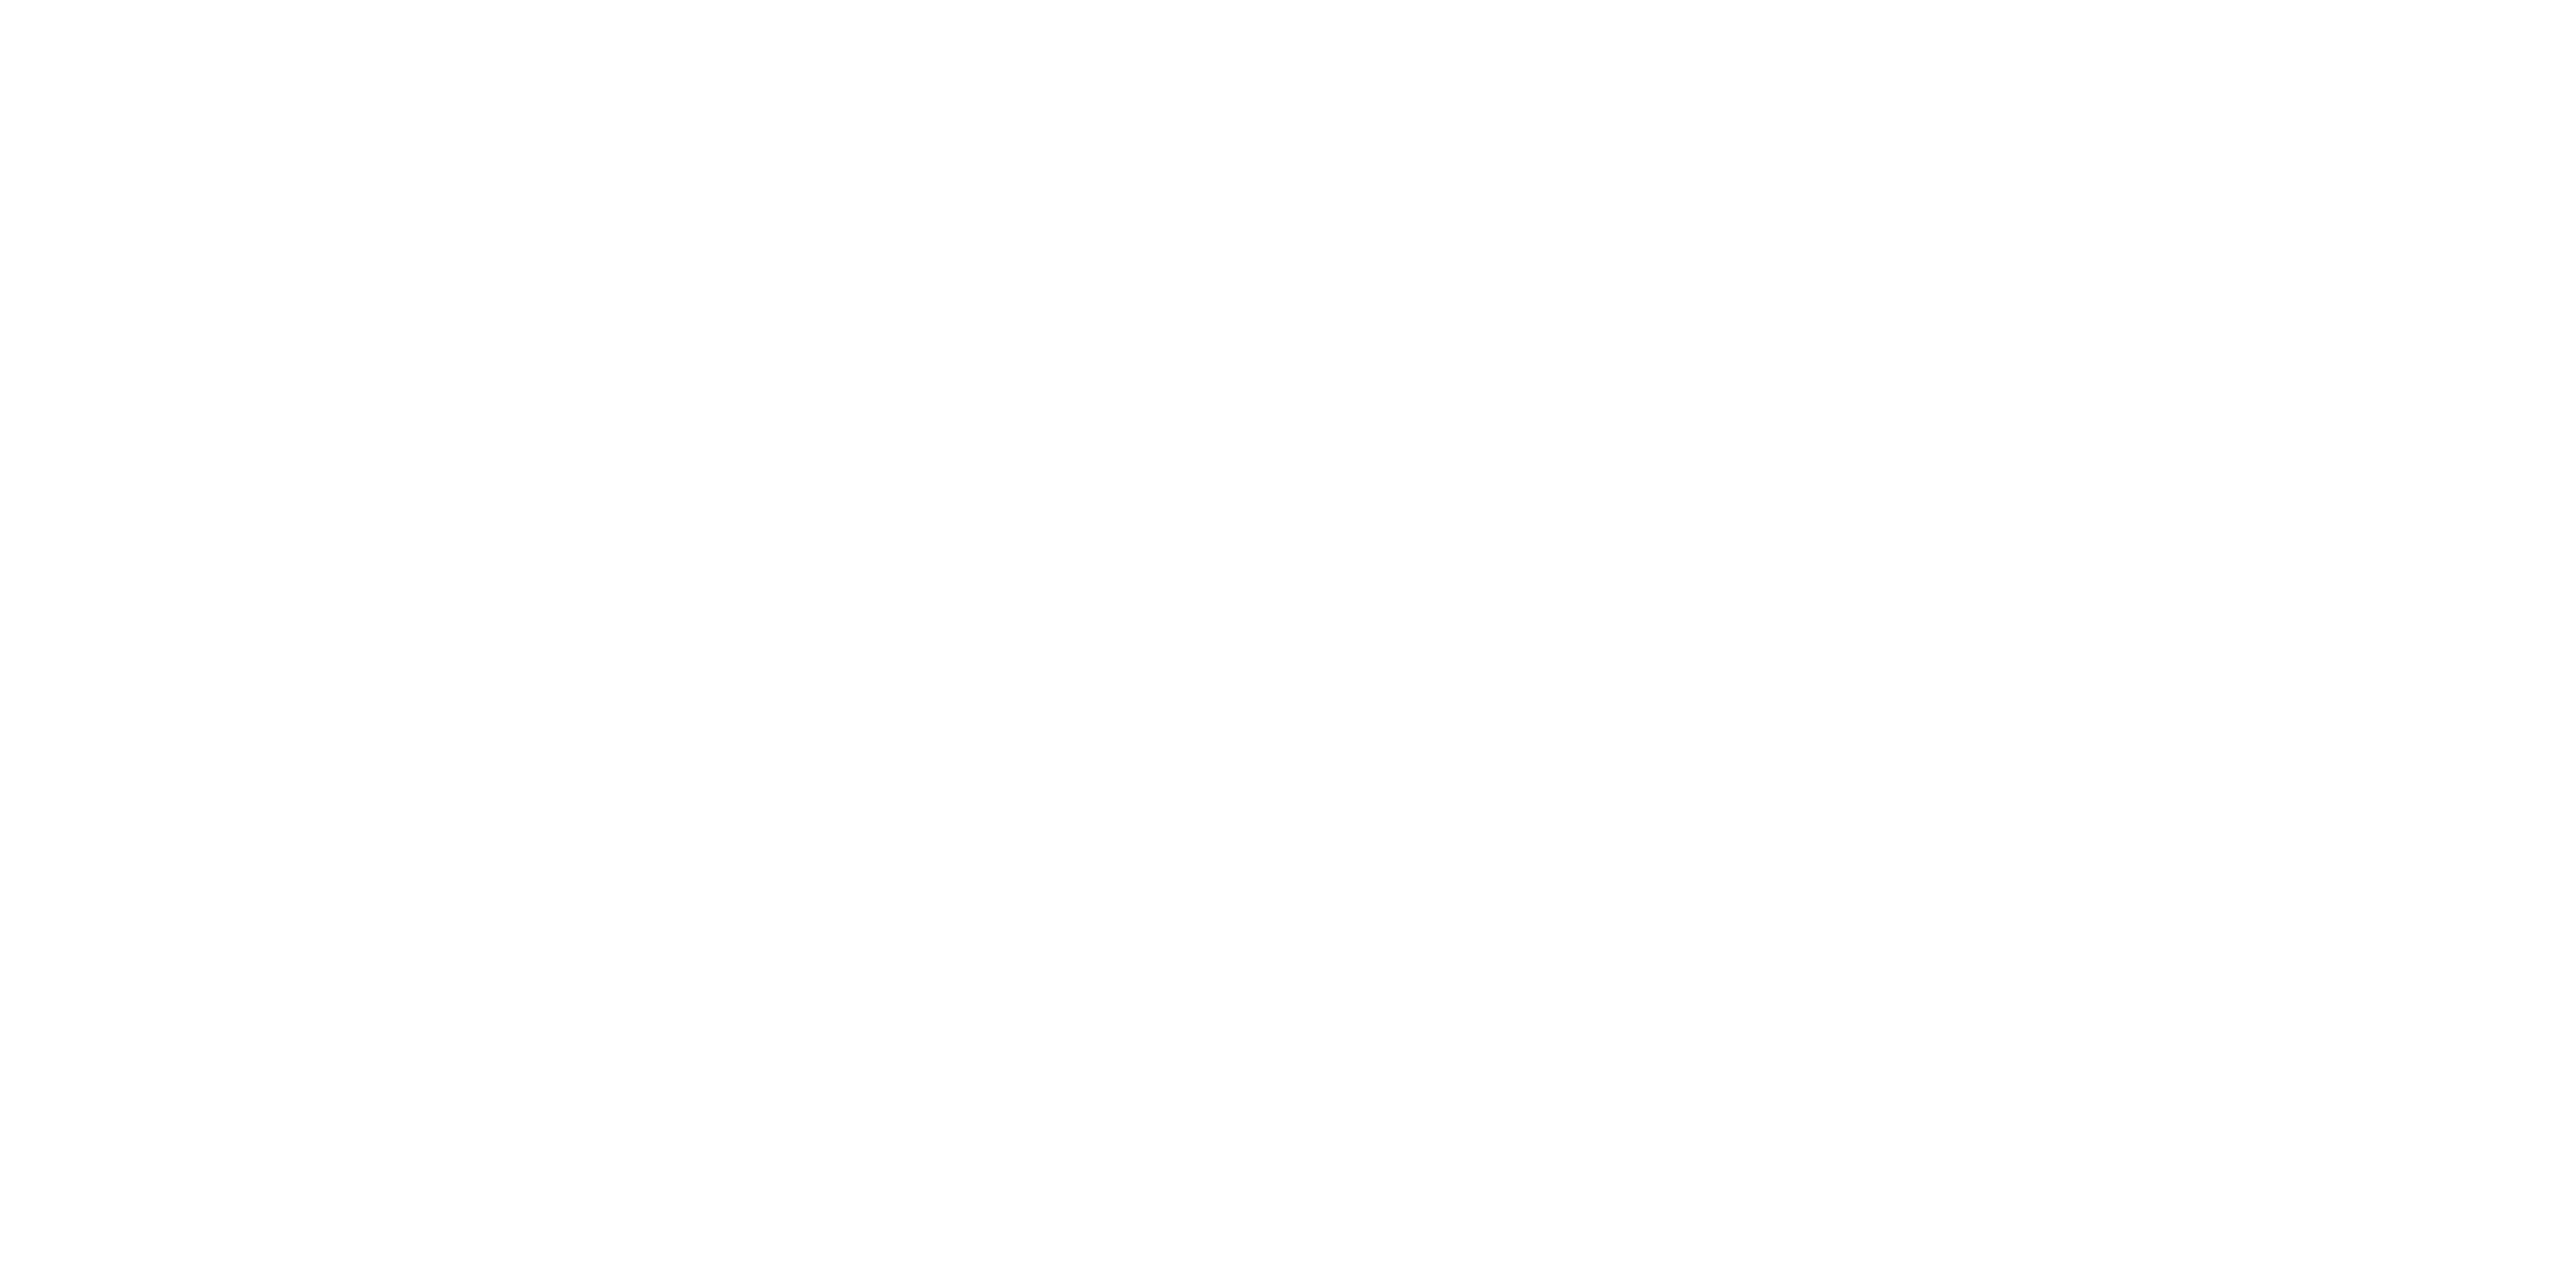 okbet